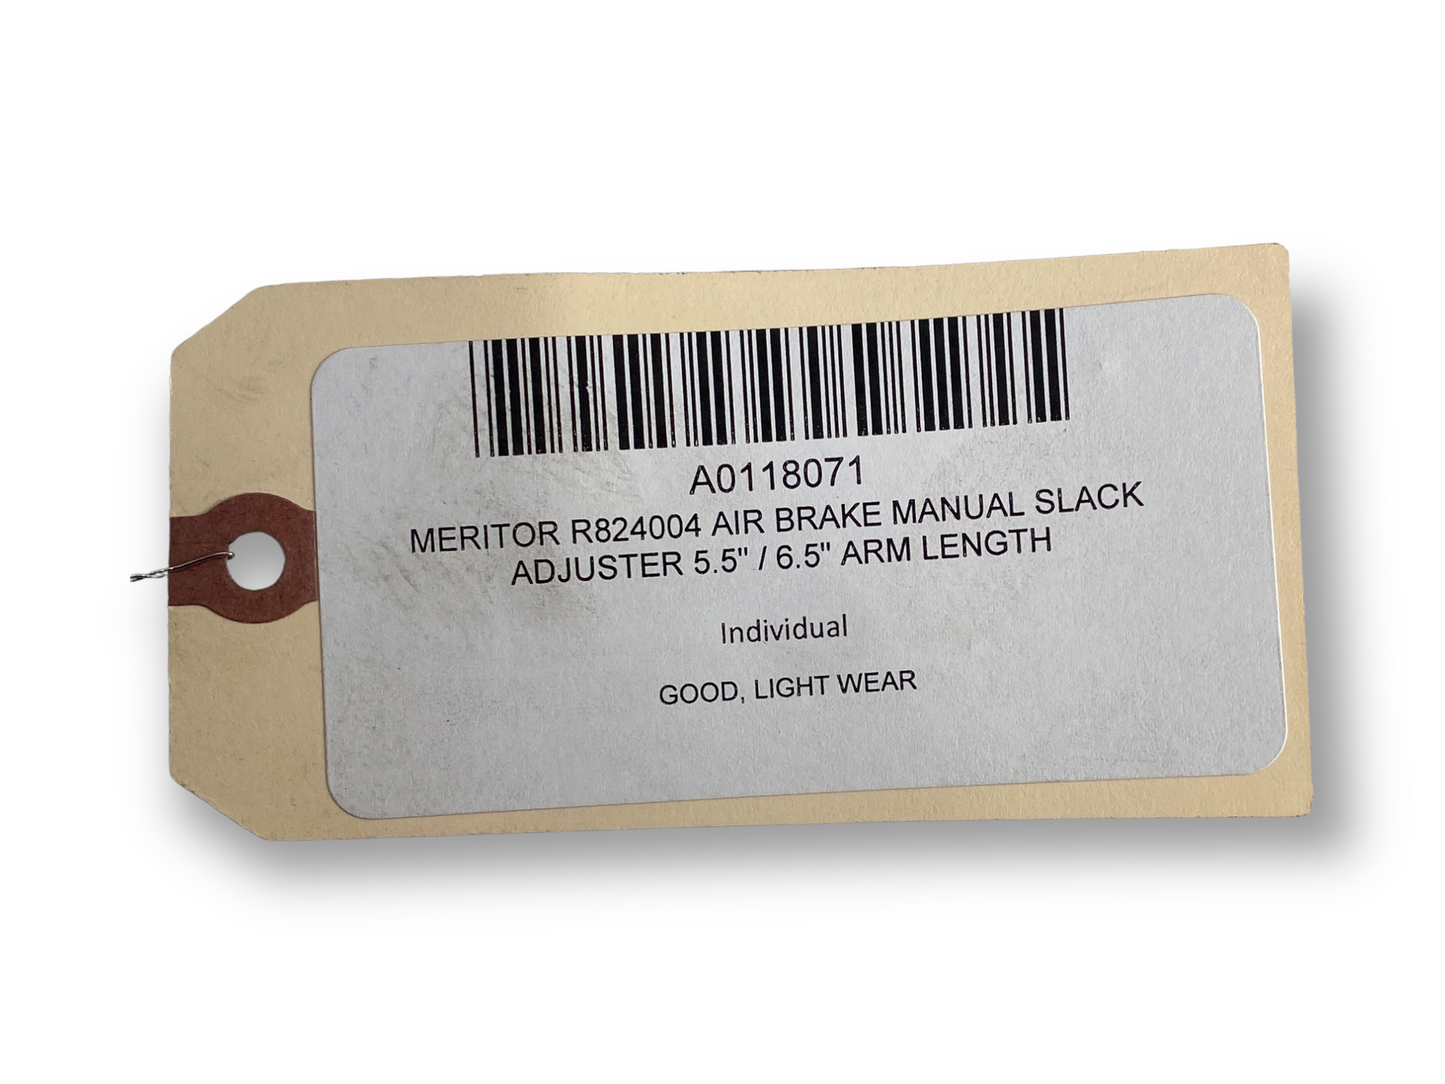 Meritor R824004 Air Brake Manual Slack Adjuster 5.5" / 6.5" Arm Length